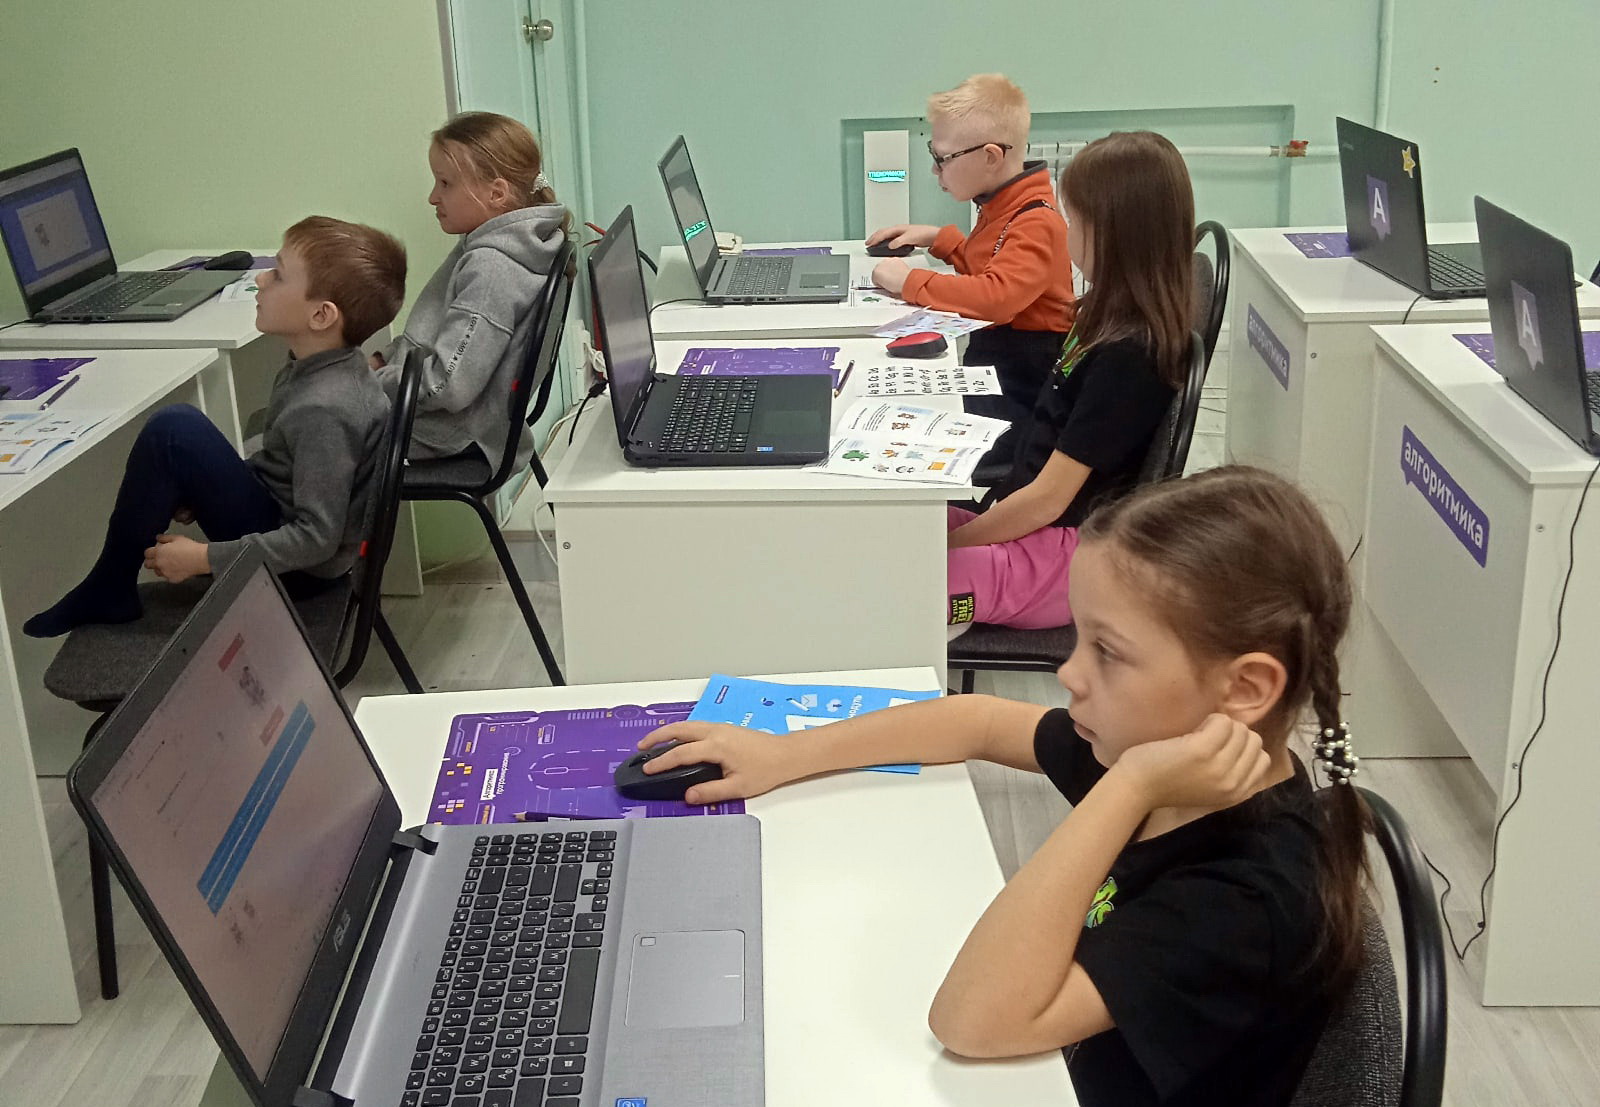 Старт уже скоро! Школа программирования Алгоритмика начинает запись на мастер-классы для детей от 6 до 17 лет